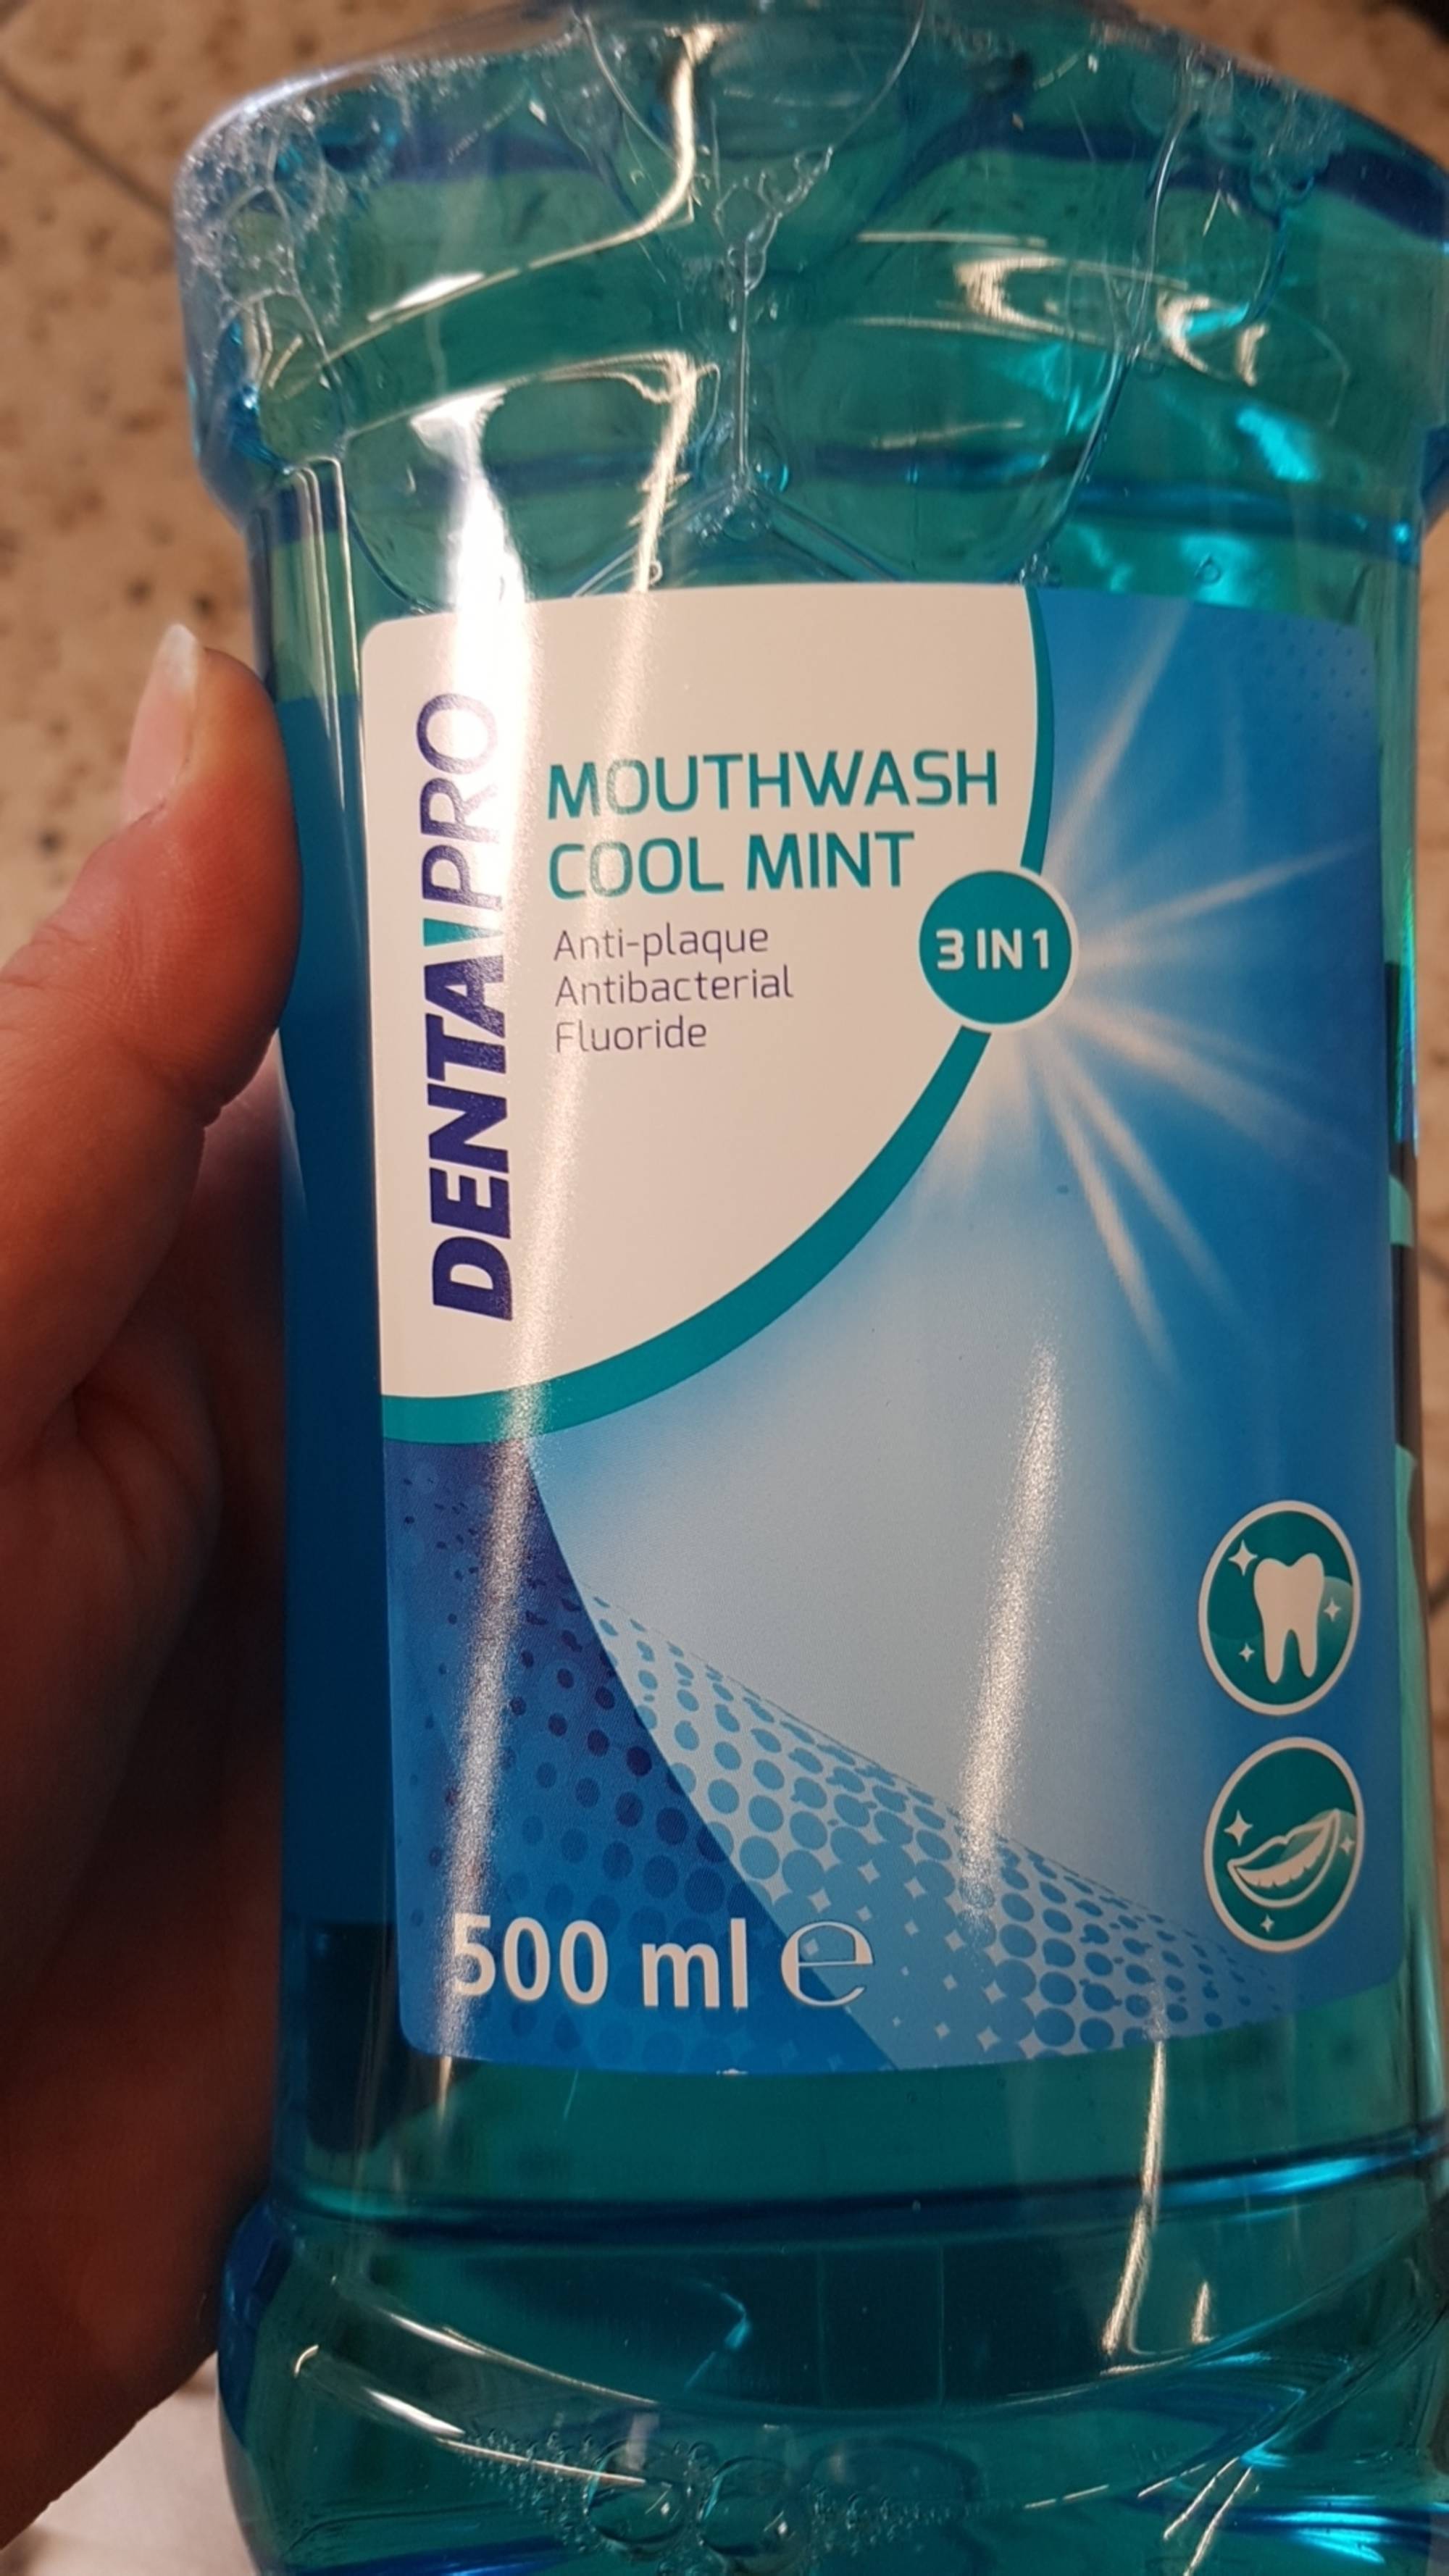 DENTA PRO - Mouthwash cool mint 3 in 1